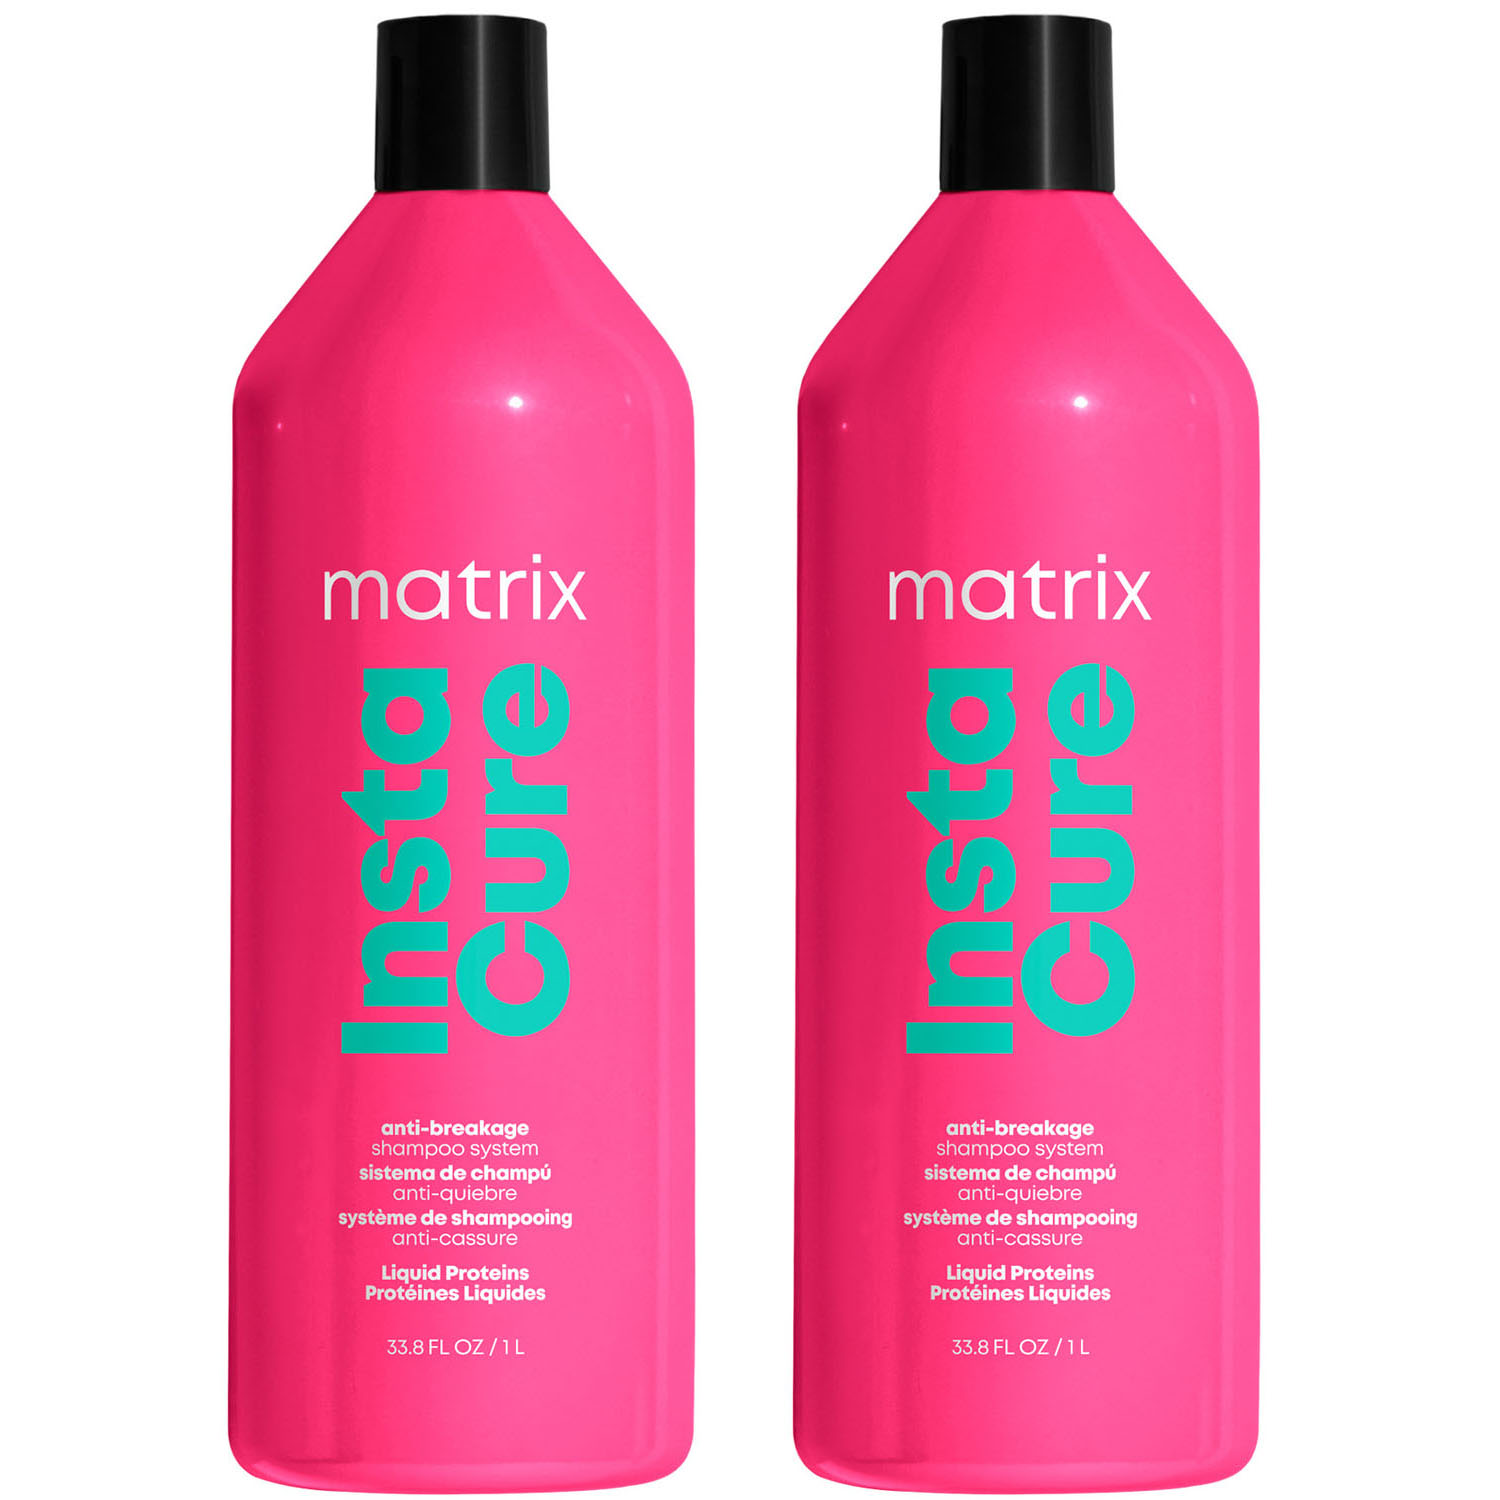 Matrix Профессиональный шампунь Instacure для восстановления волос с жидким протеином, 1000 мл х 2 шт (Matrix, Total Results) matrix профессиональный шампунь instacure для восстановления волос с жидким протеином 1000 мл х 2 шт matrix total results